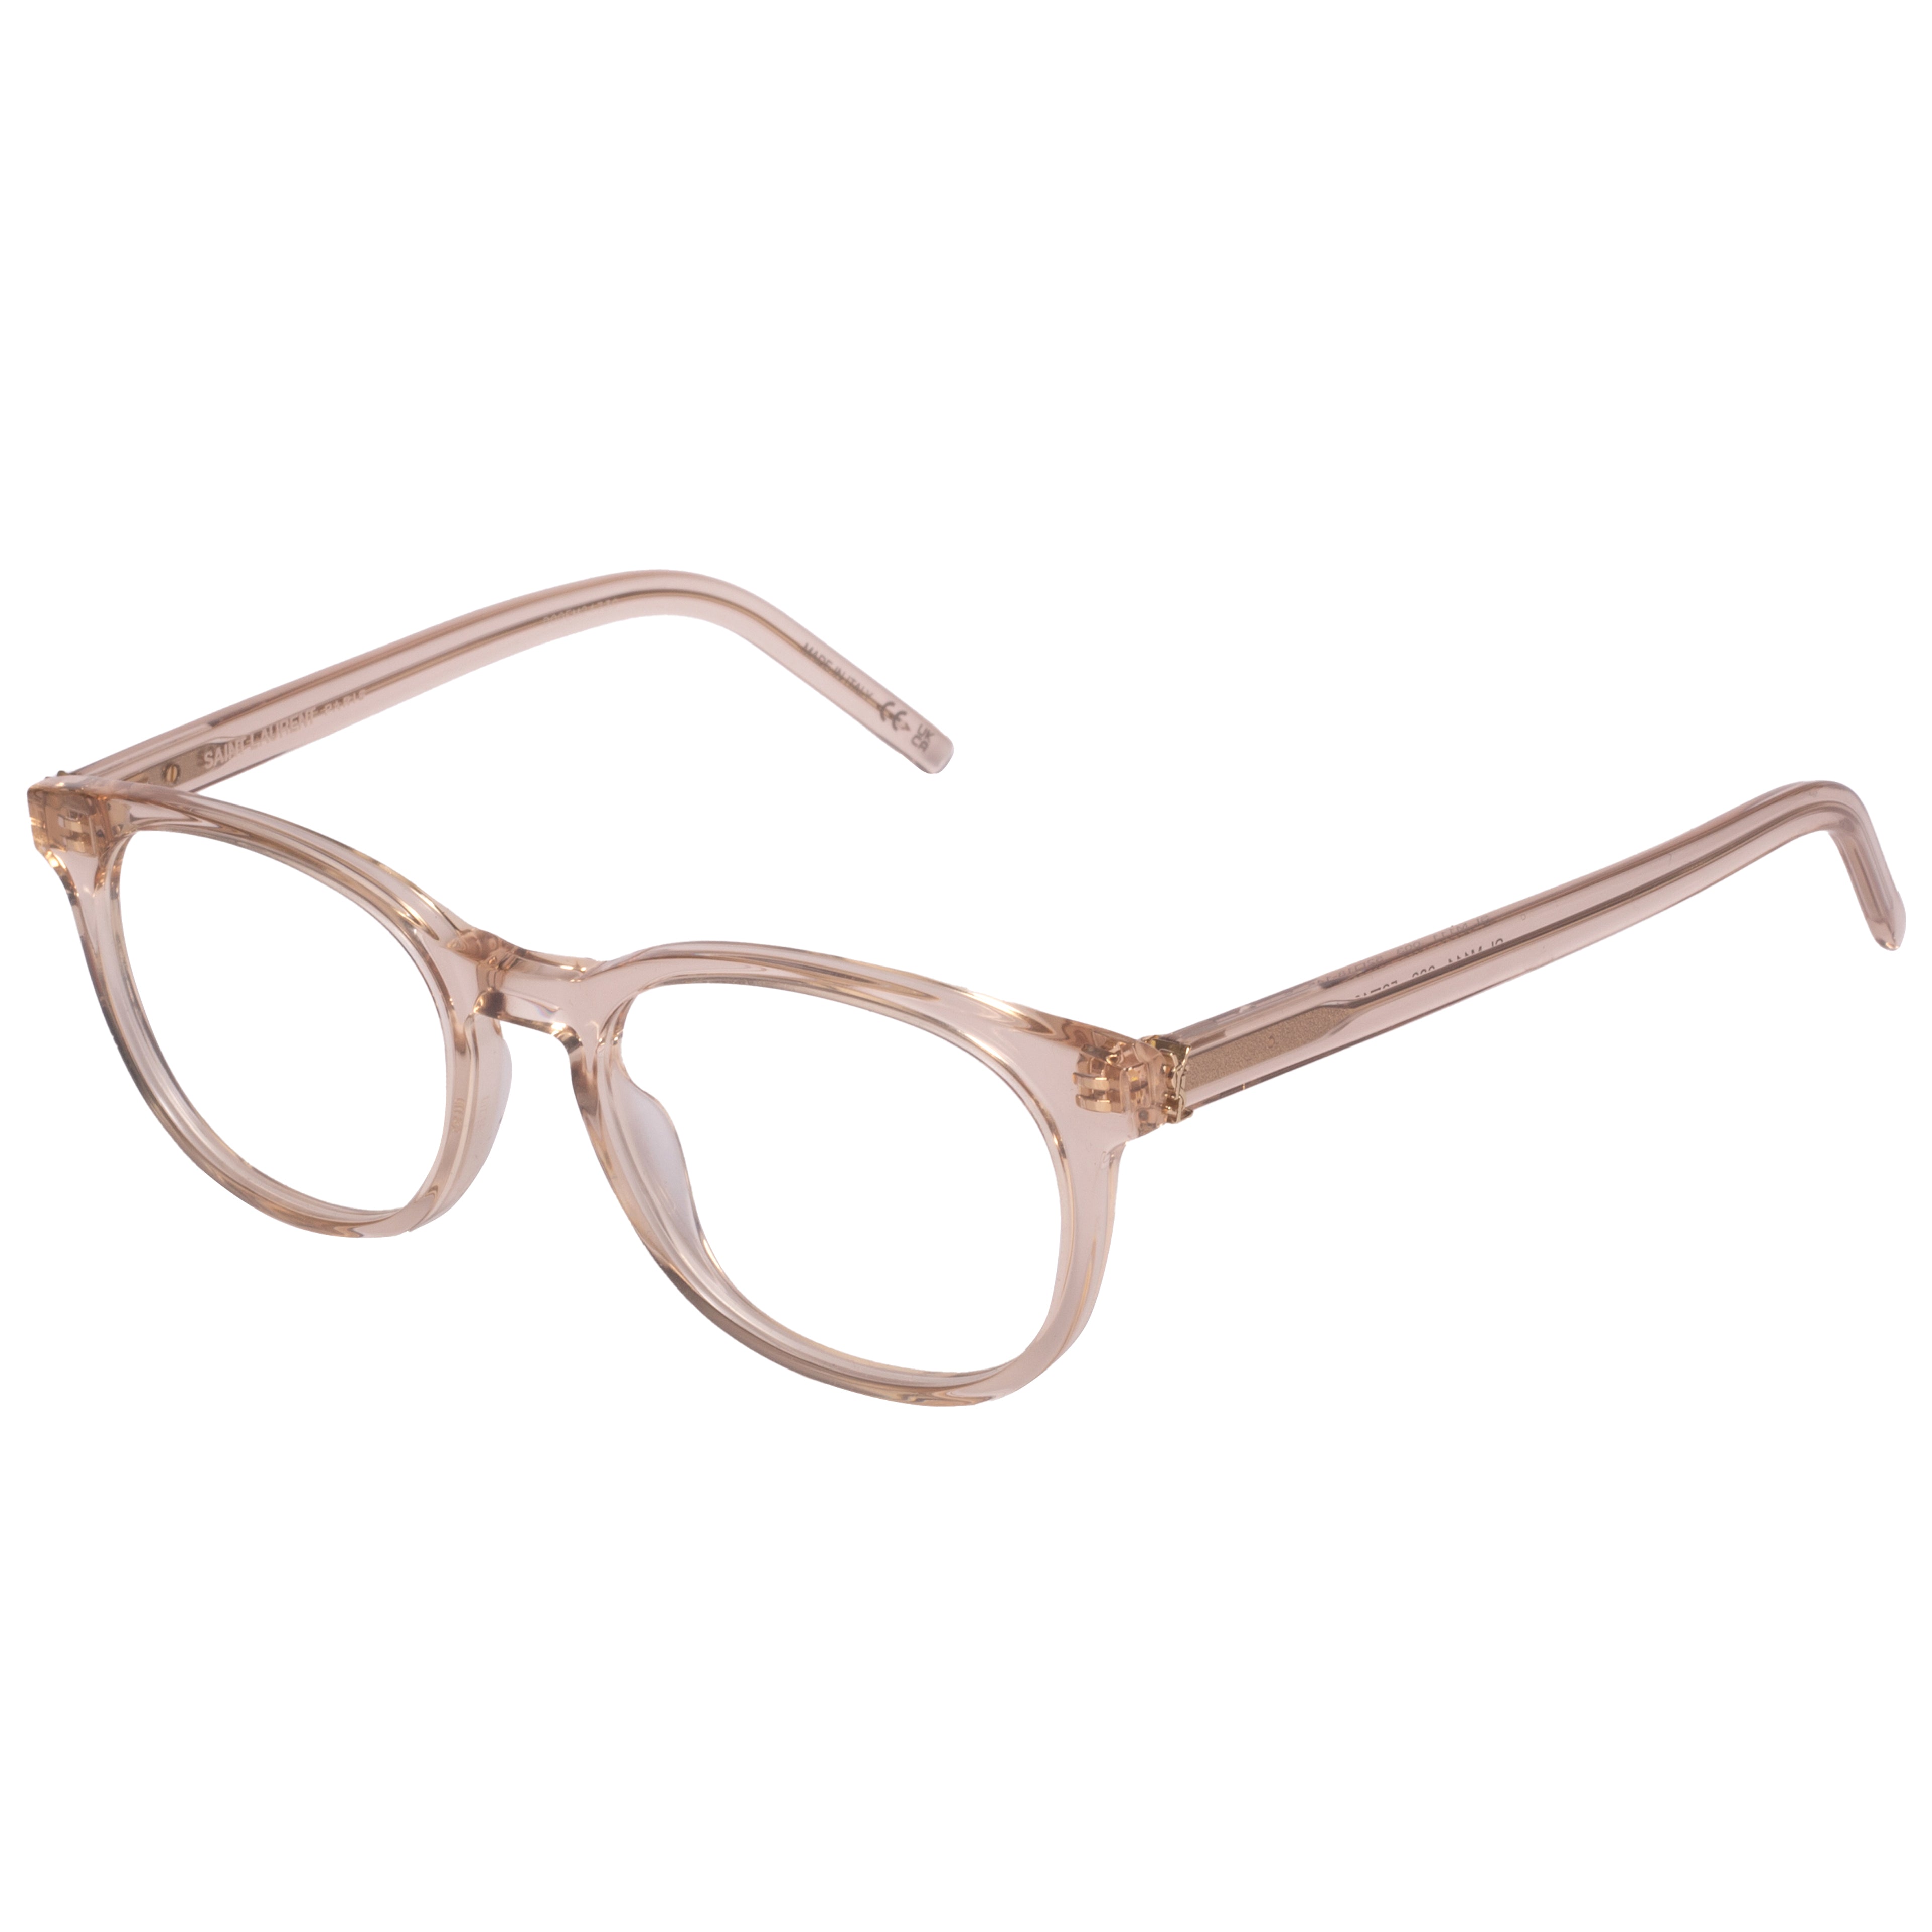 Saint Laurent-SL M111-52-003 Eyeglasses - Premium Eyeglasses from Saint Laurent - Just Rs. 23300! Shop now at Laxmi Opticians